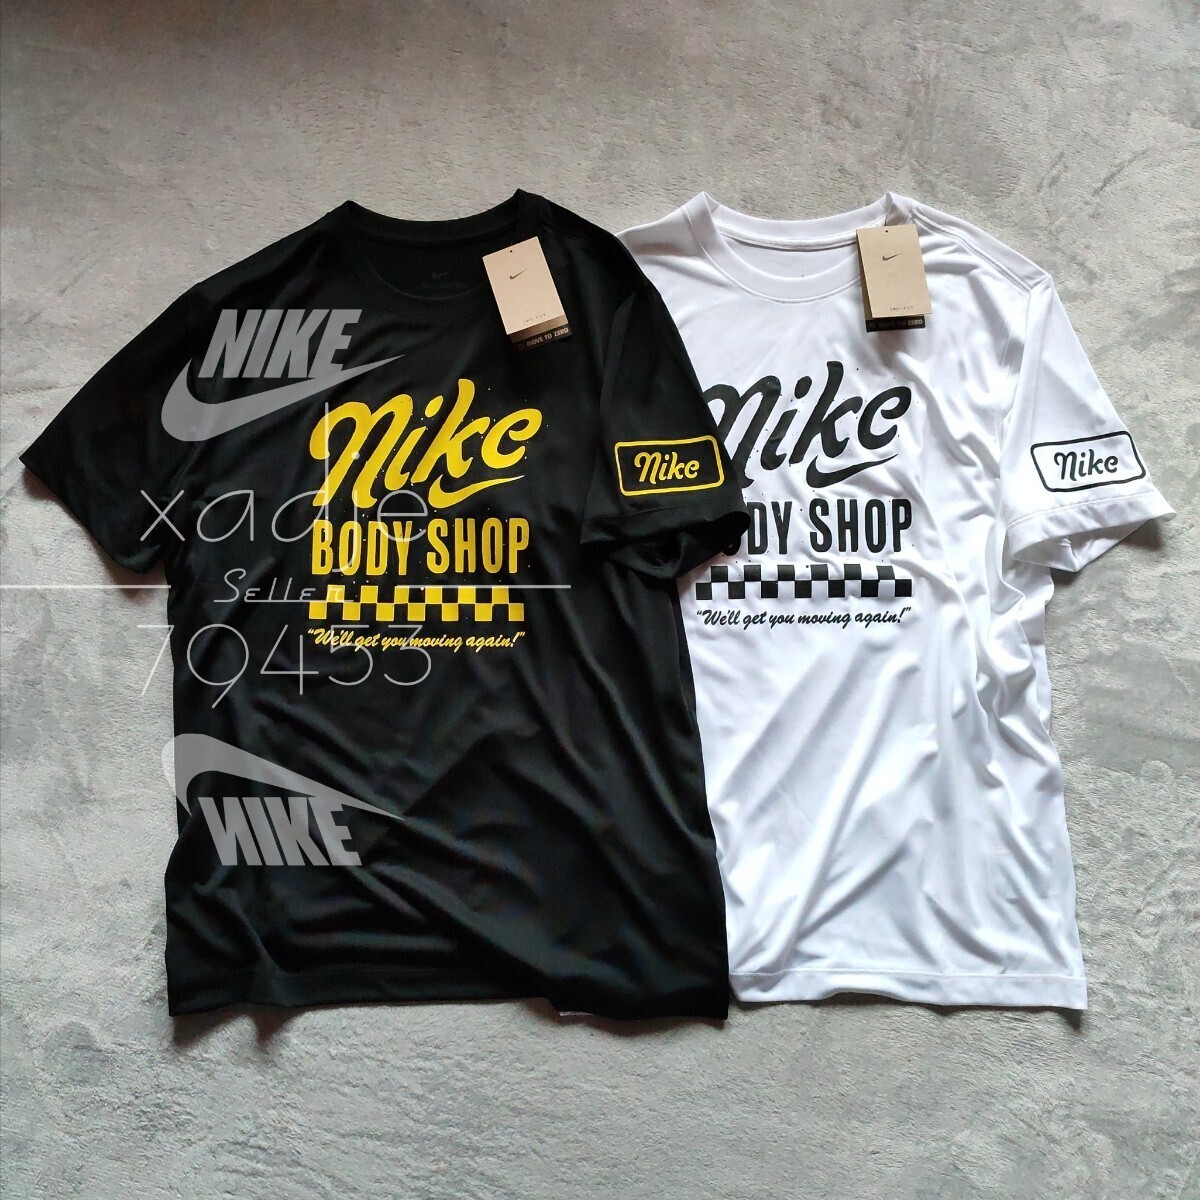  новый товар стандартный товар NIKE Nike BODY SHOP джерси короткий рукав футболка 2 шт. комплект чёрный черный белый белый Logo принт L